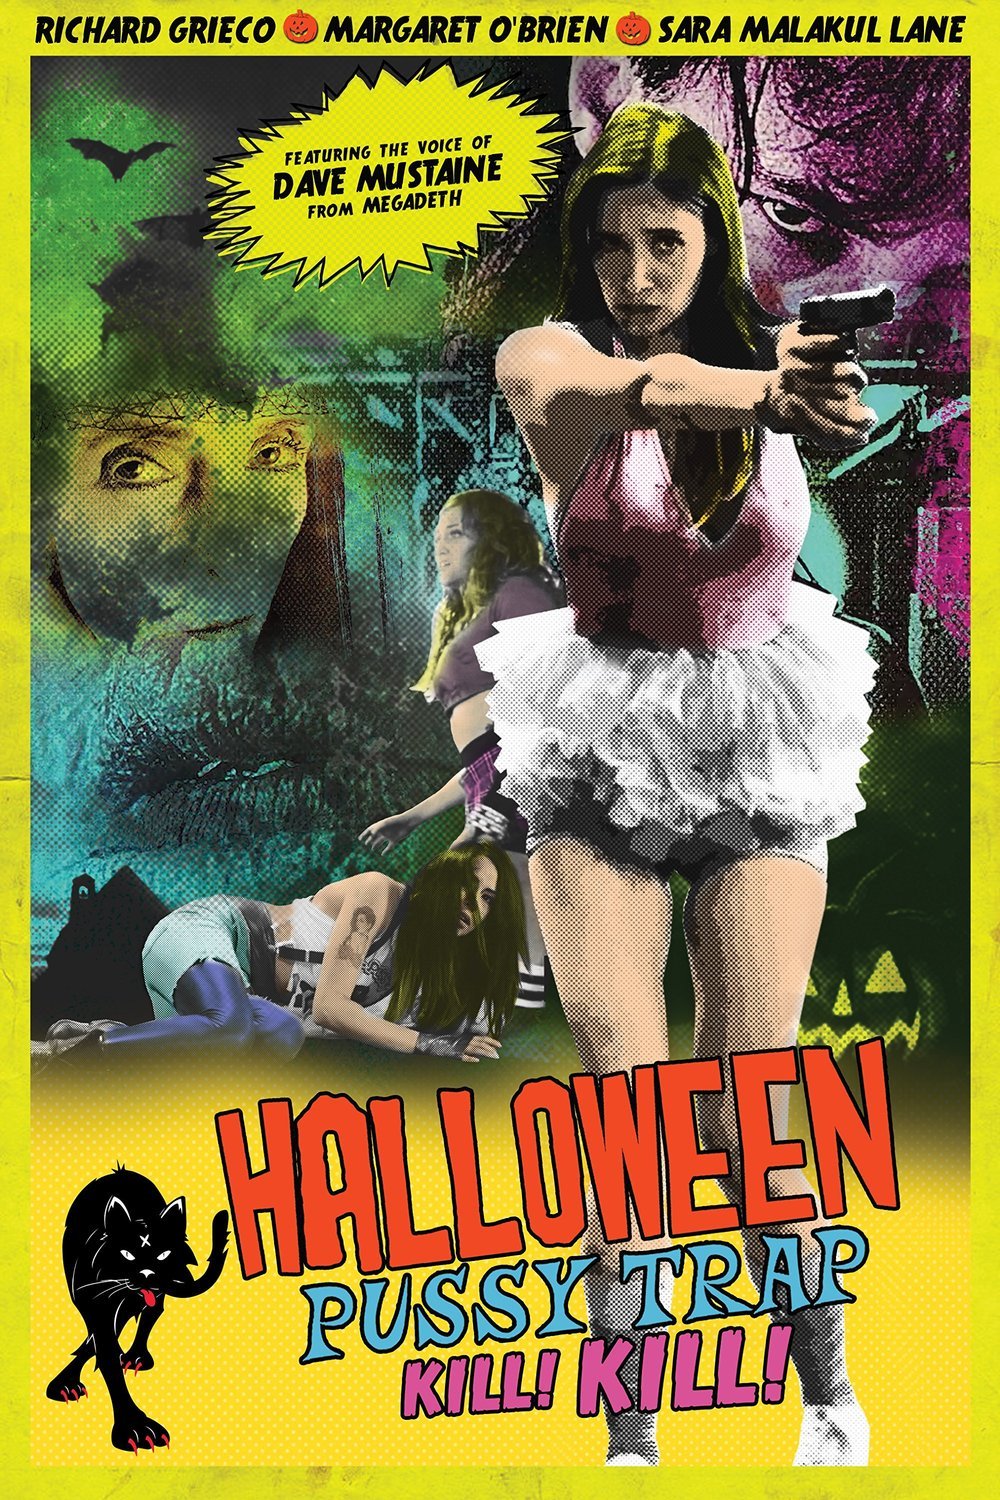 Poster of the movie Halloween Pussy Trap Kill Kill